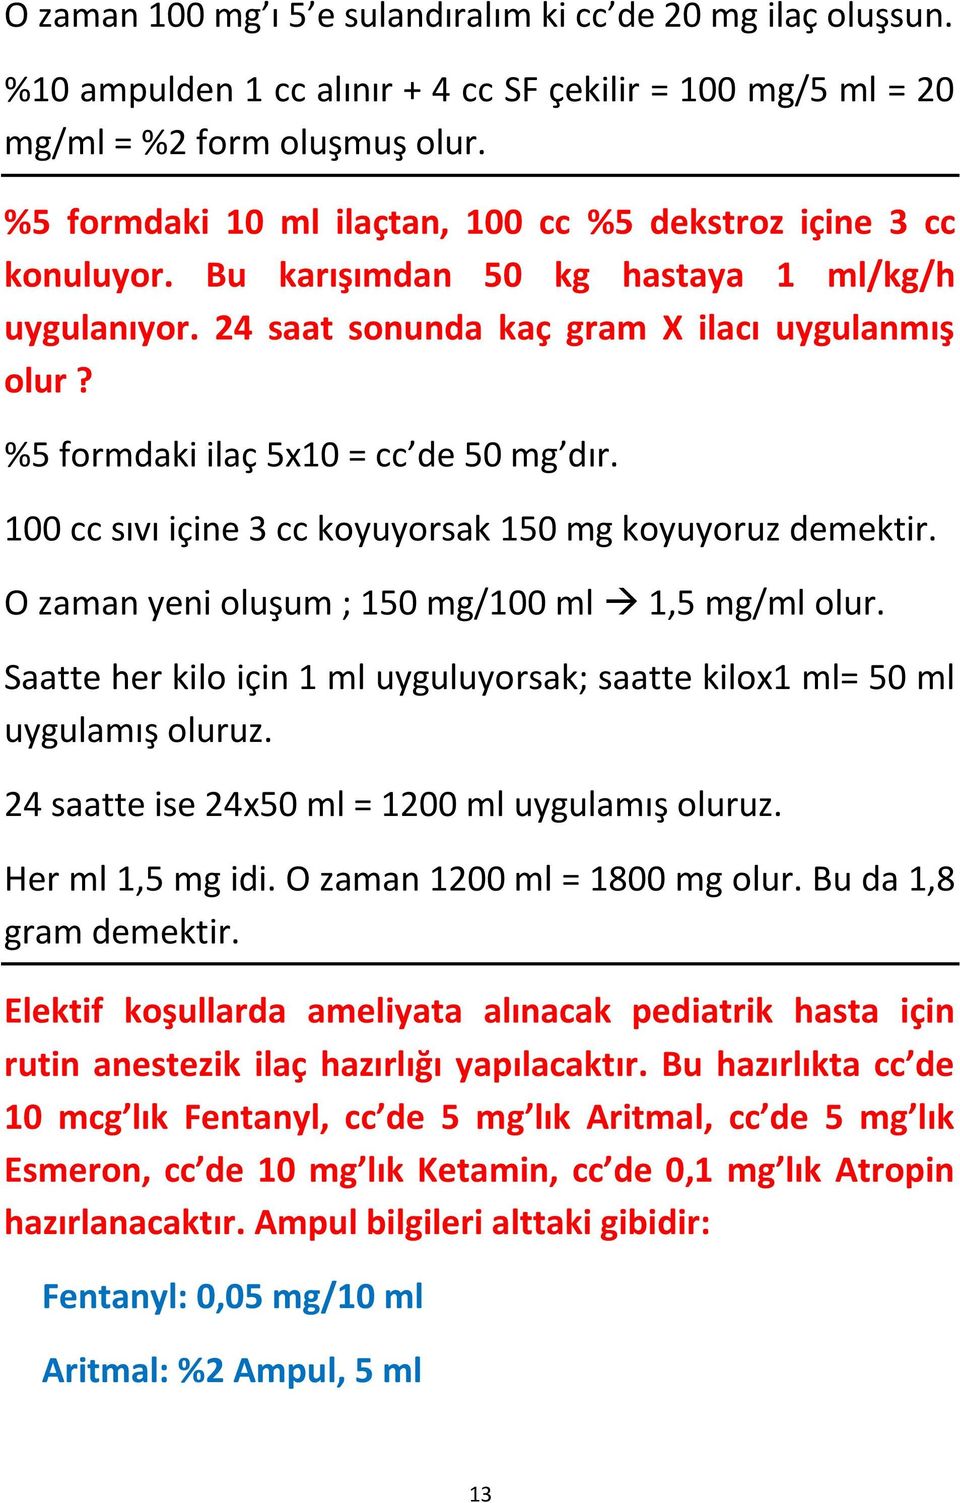 %5 formdaki ilaç 5x10 = cc de 50 mg dır. 100 cc sıvı içine 3 cc koyuyorsak 150 mg koyuyoruz demektir. O zaman yeni oluşum ; 150 mg/100 ml 1,5 mg/ml olur.